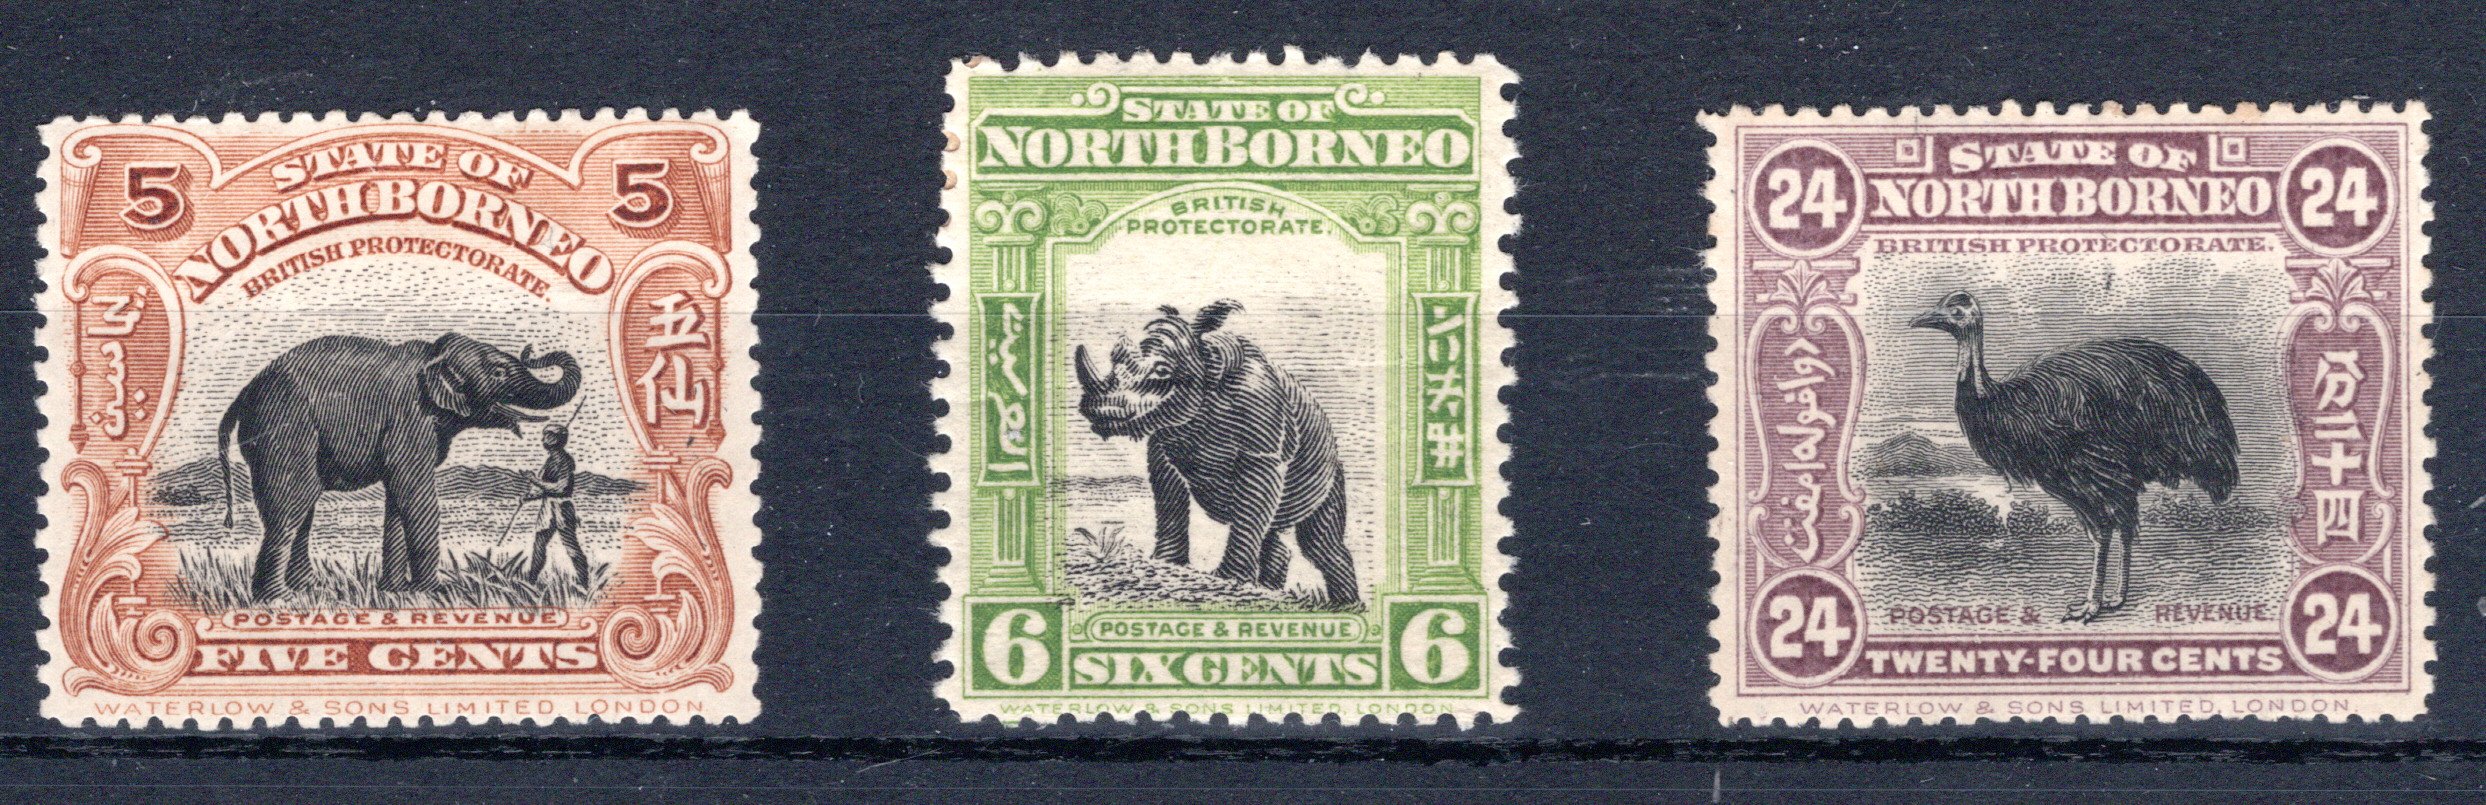 Lot 466 - British Commonwealth north borneo -  Georg Bühler Briefmarken Auktionen GmbH 27th mail bid auction